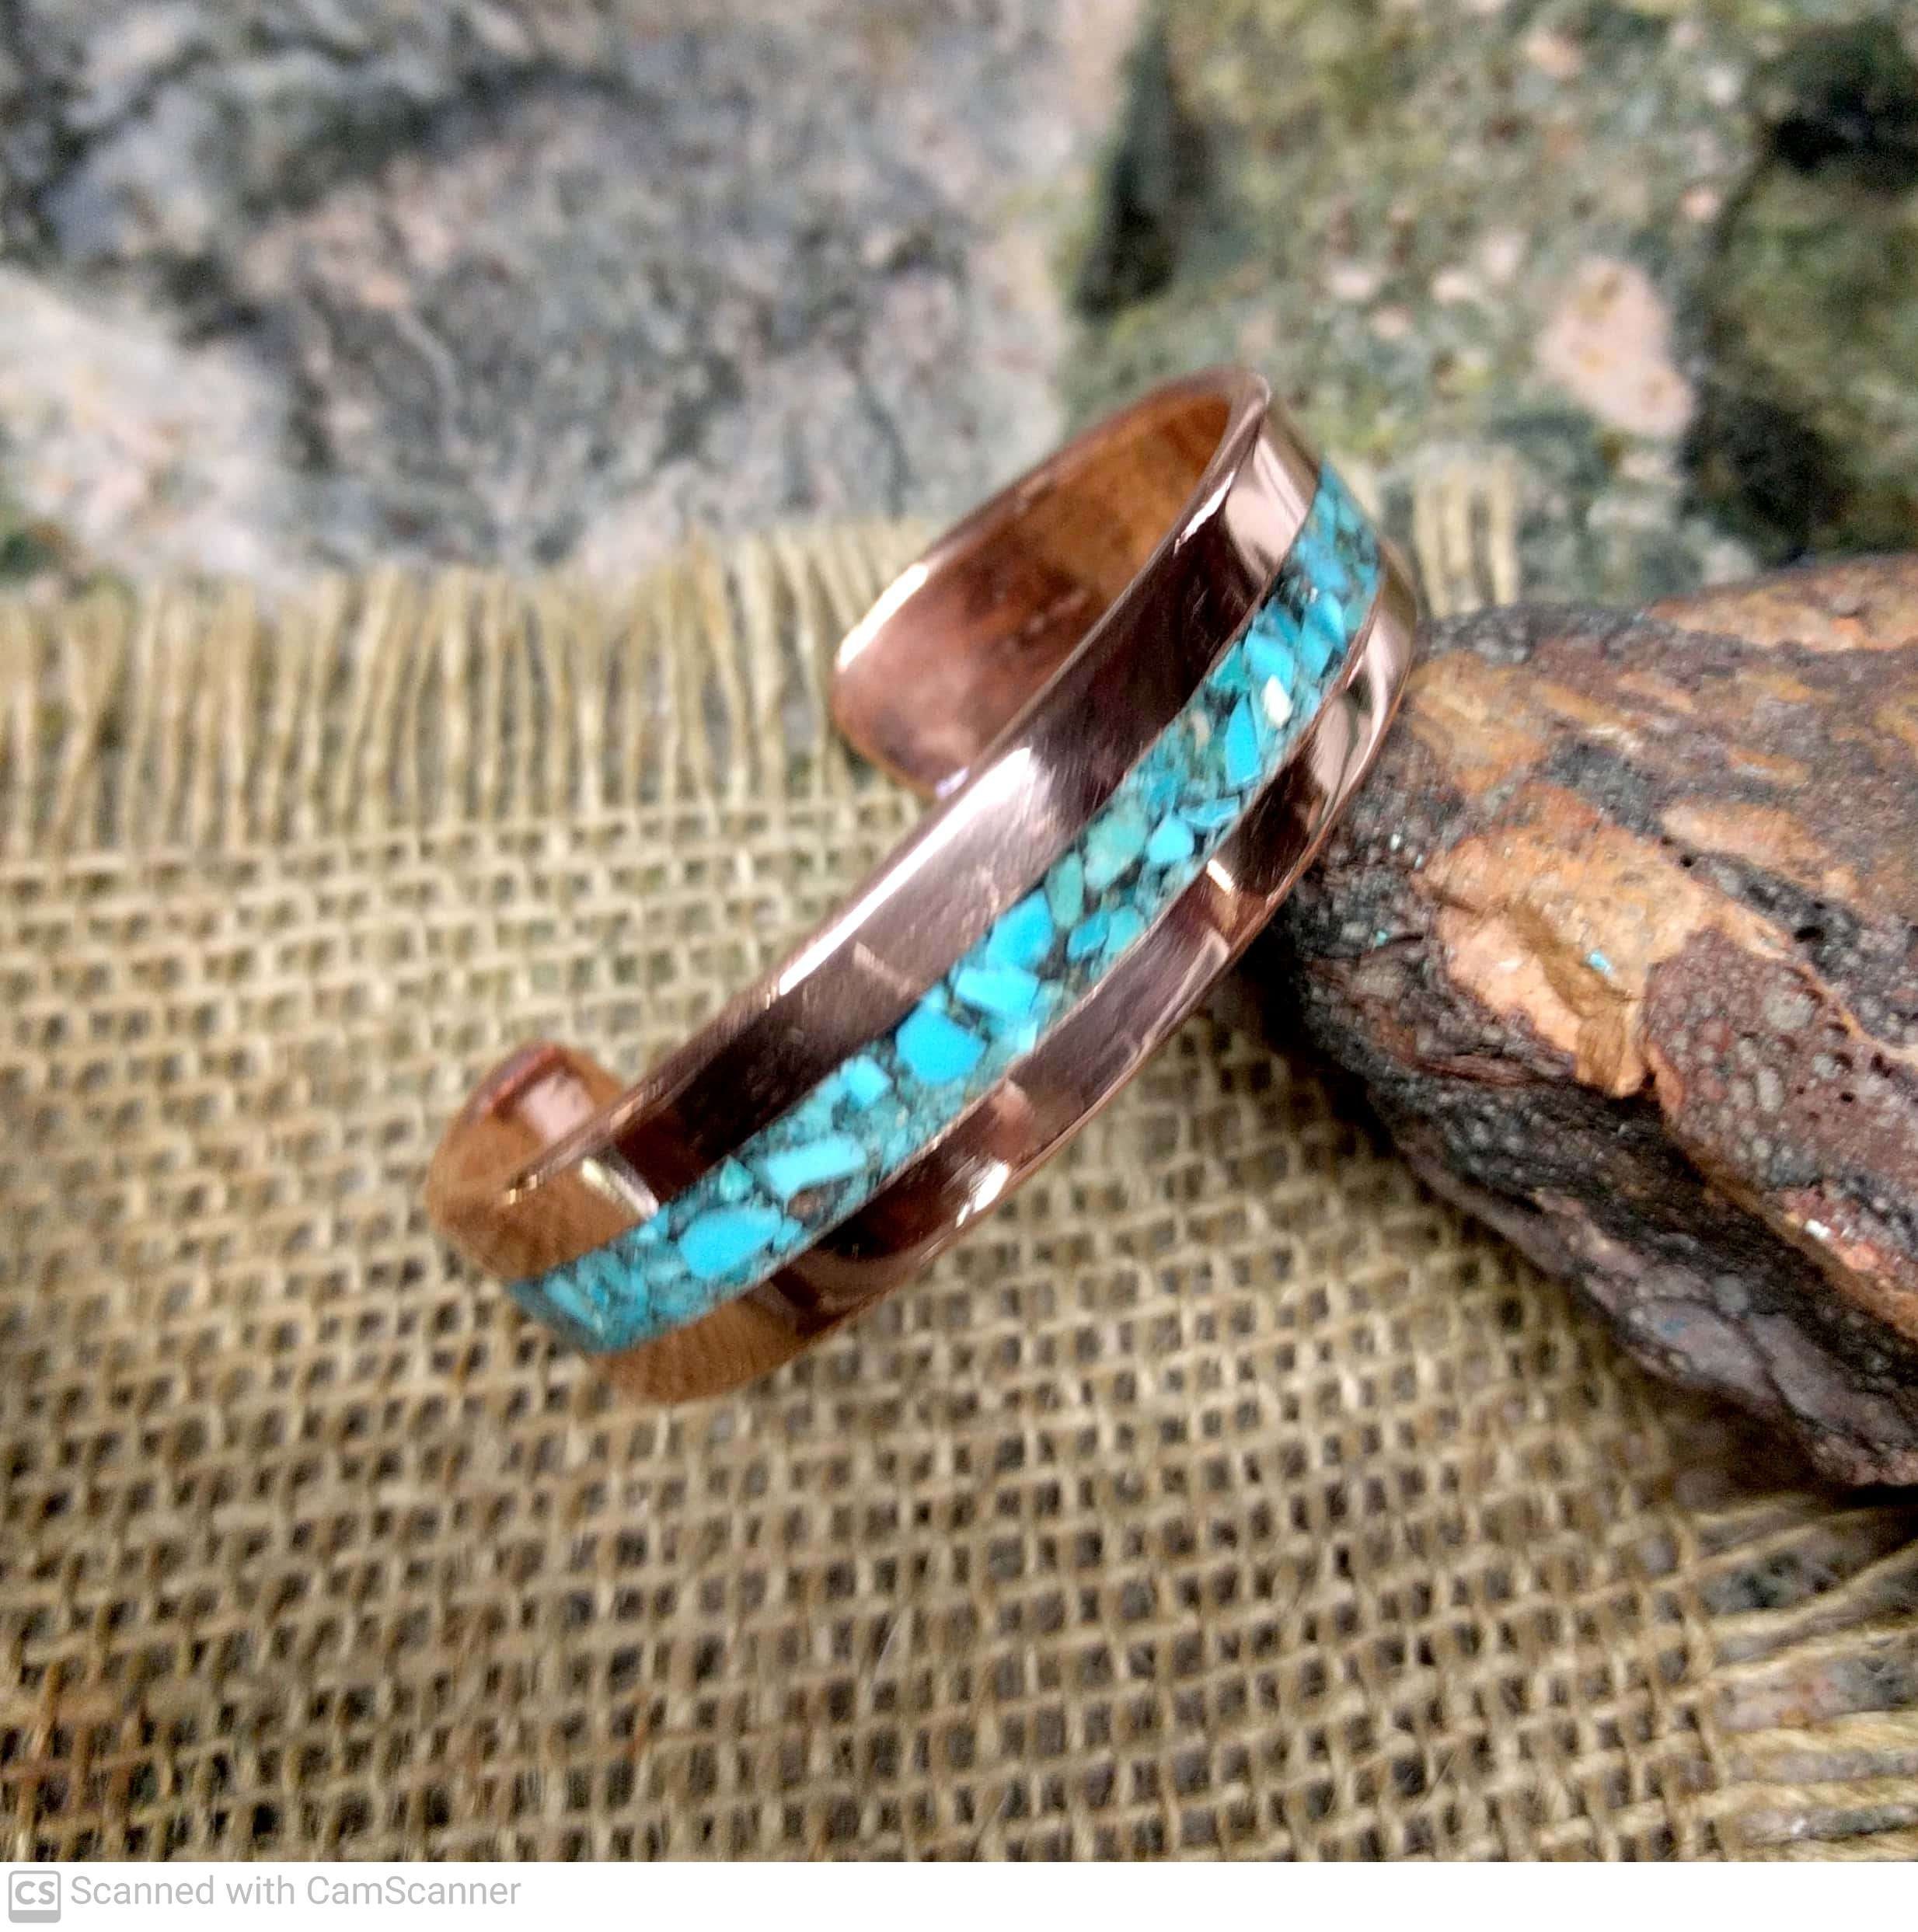 Turquoise & Copper Necklace/Bracelet - Carmen Q